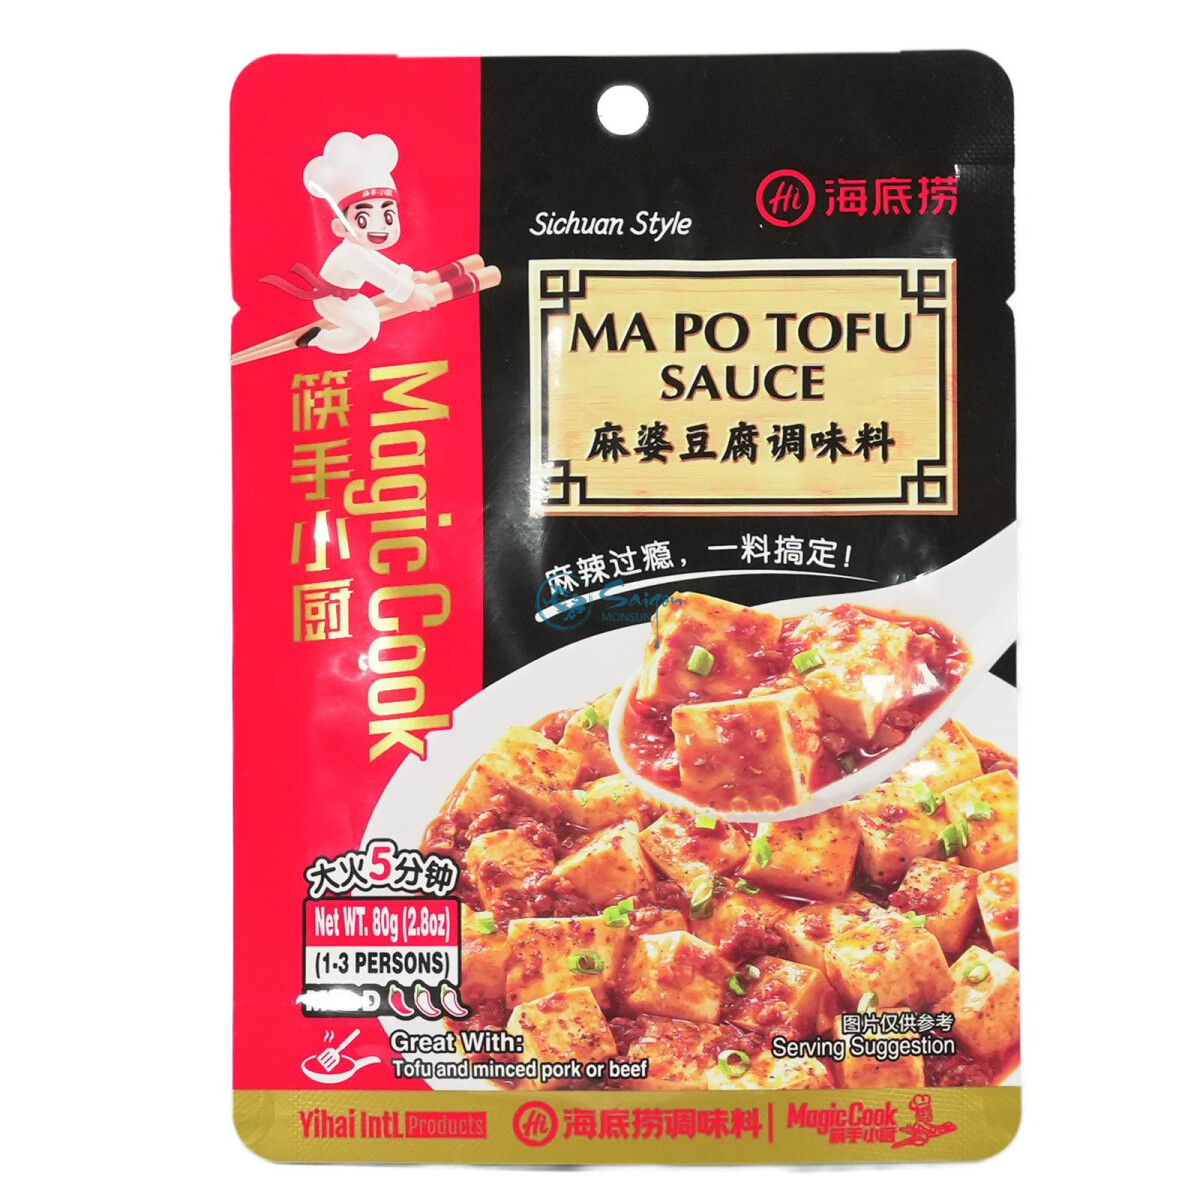 !! Haidilao Mapo Tofu Sauce 80g